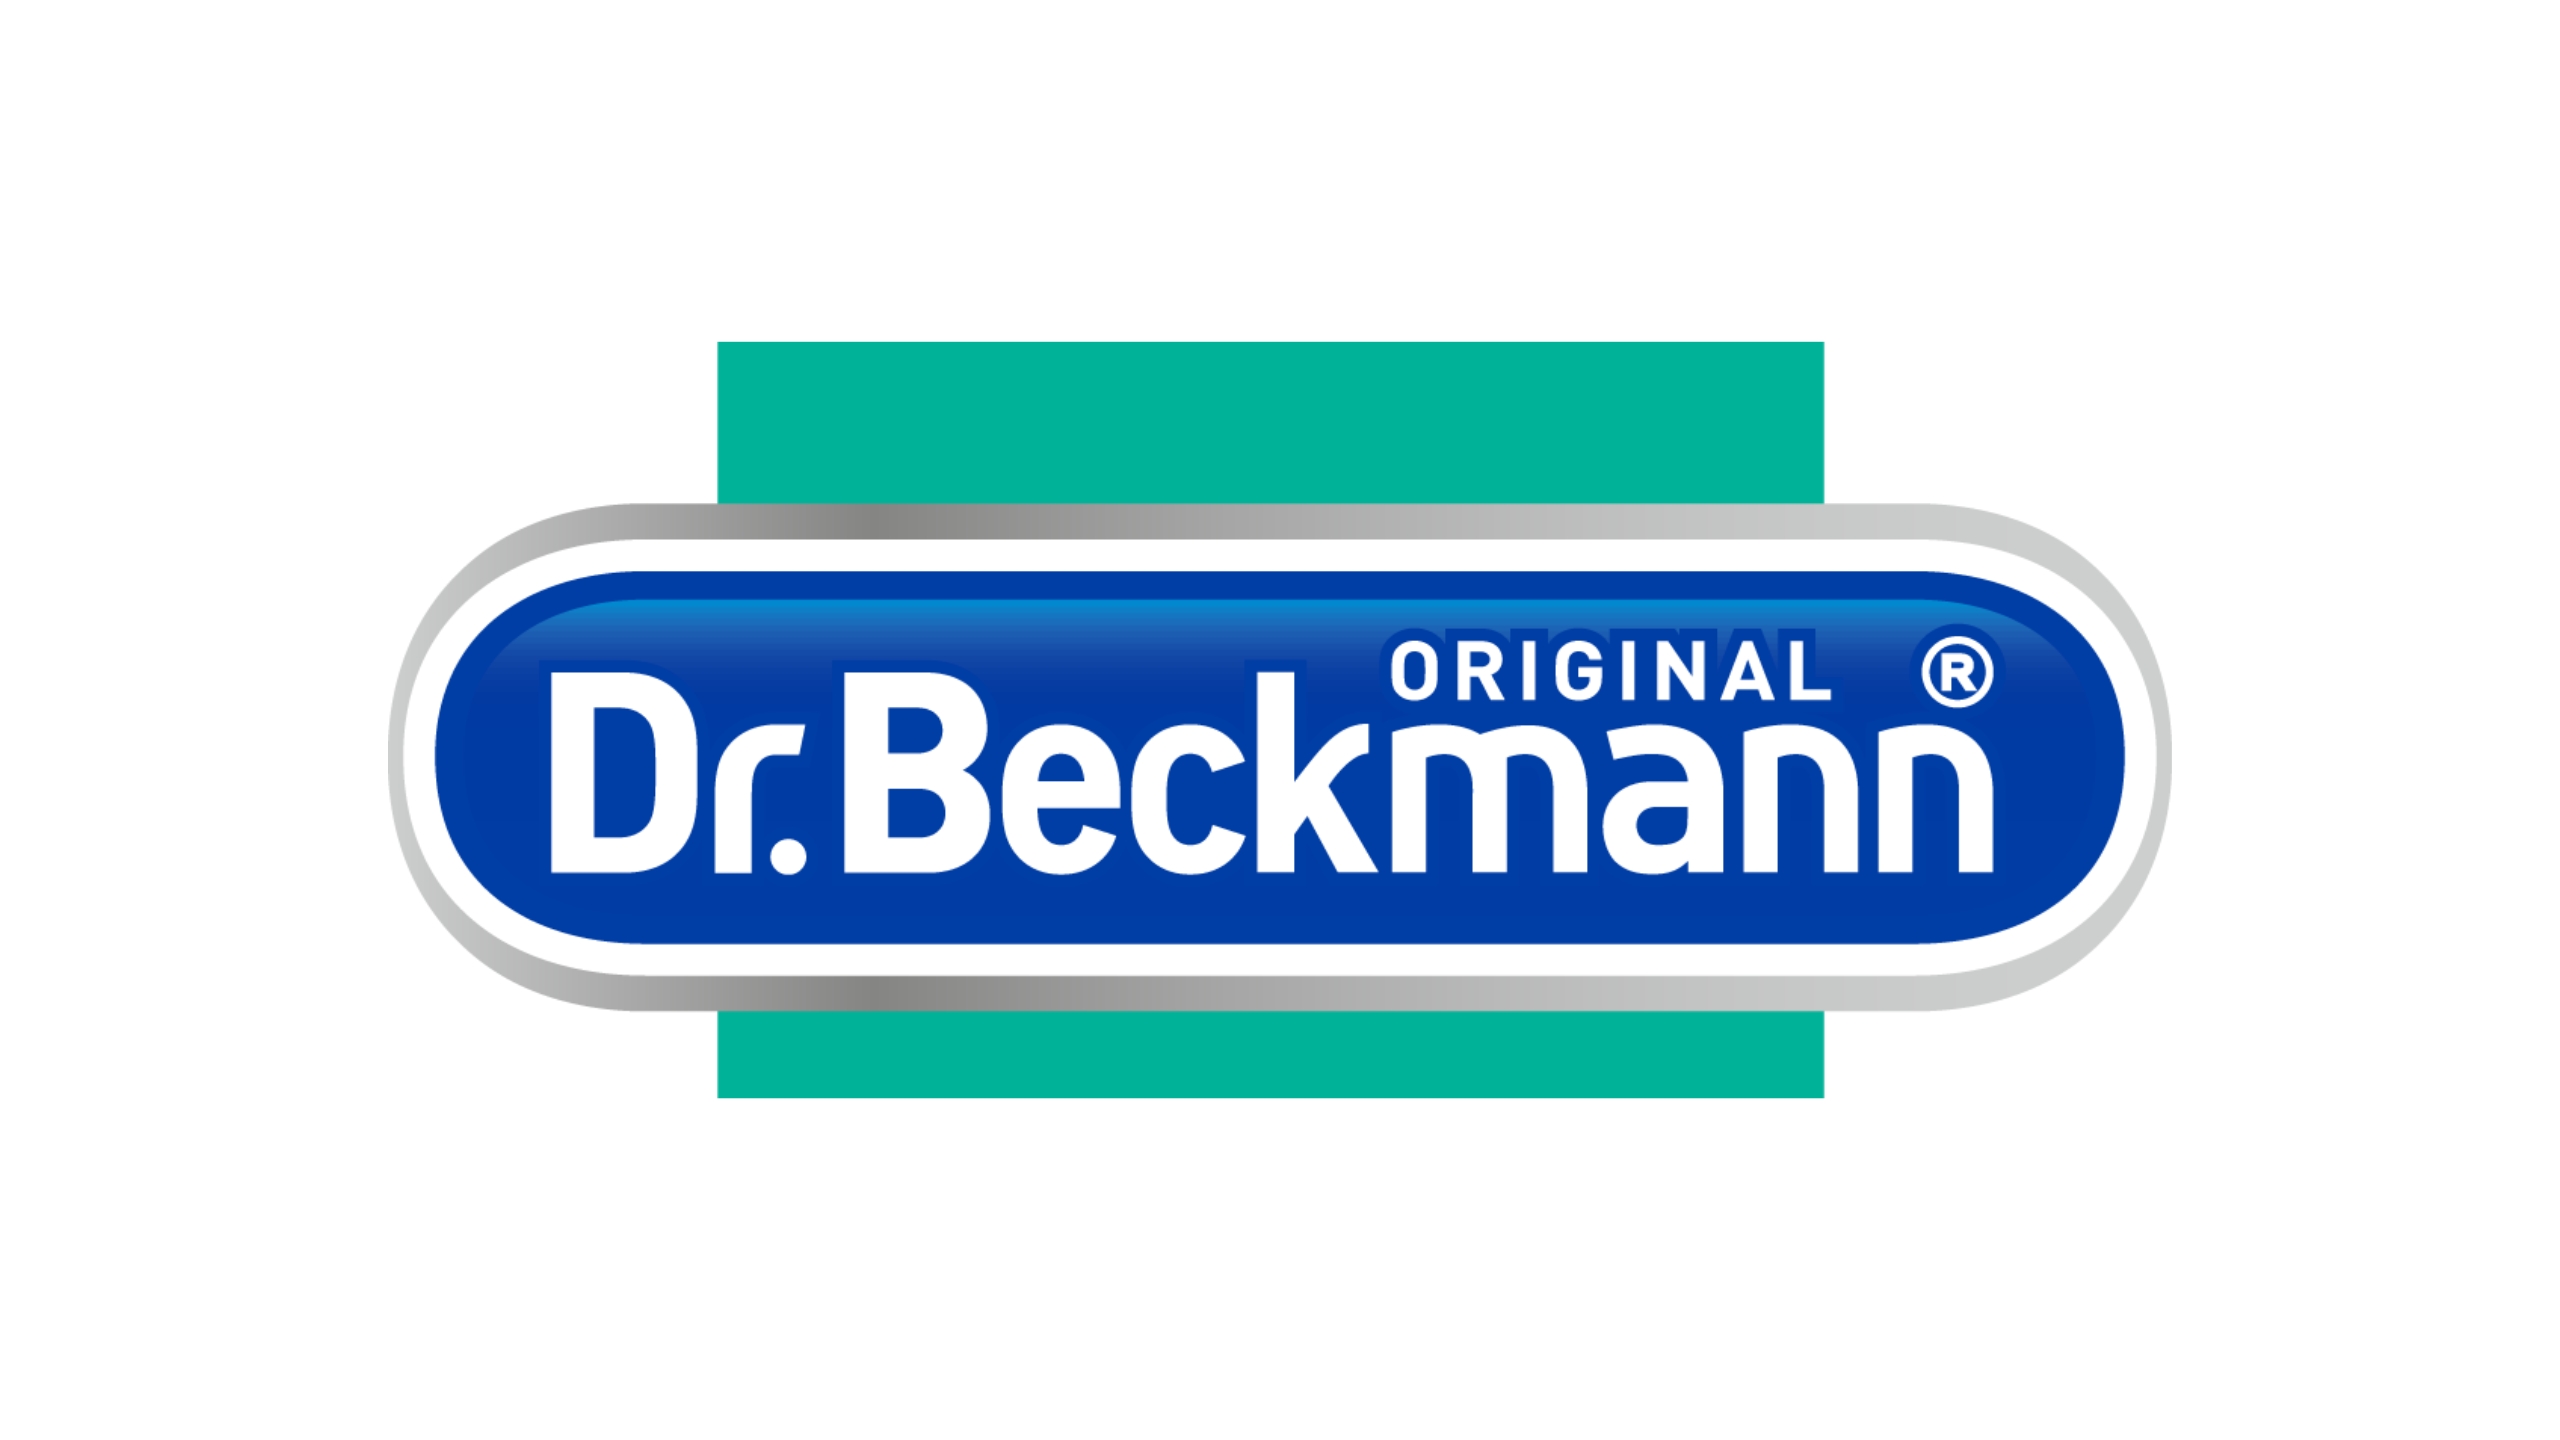 Dr. Beckmann Lingettes Désinfectantes Multi-Usages